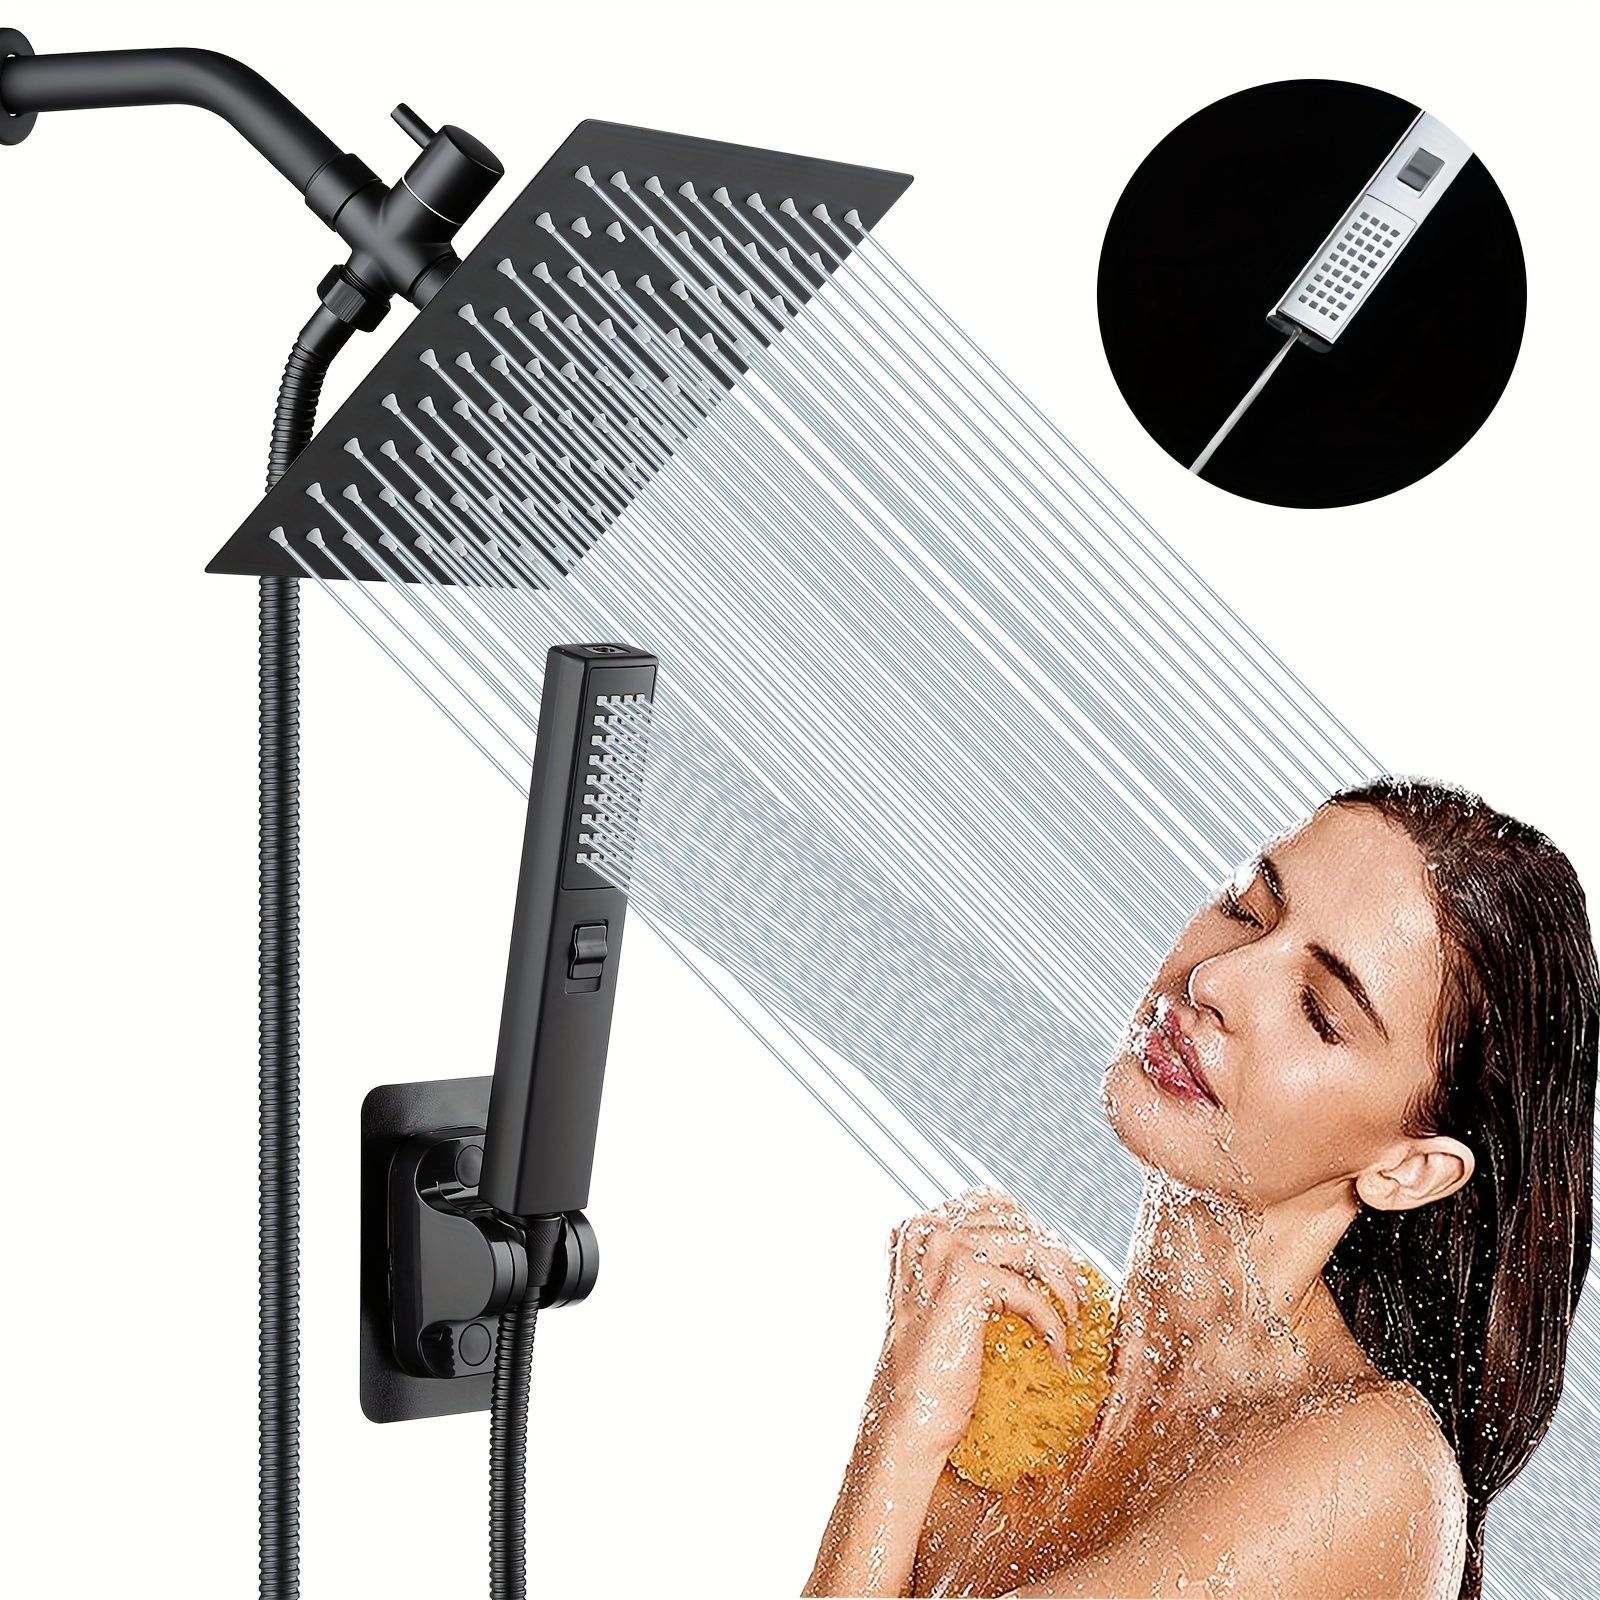 Cabezal de ducha que aumenta la presión, cabezal de ducha de alta presión  que ahorra agua, lo mejor para duchas de bajo flujo, 2.5 GPM - níquel